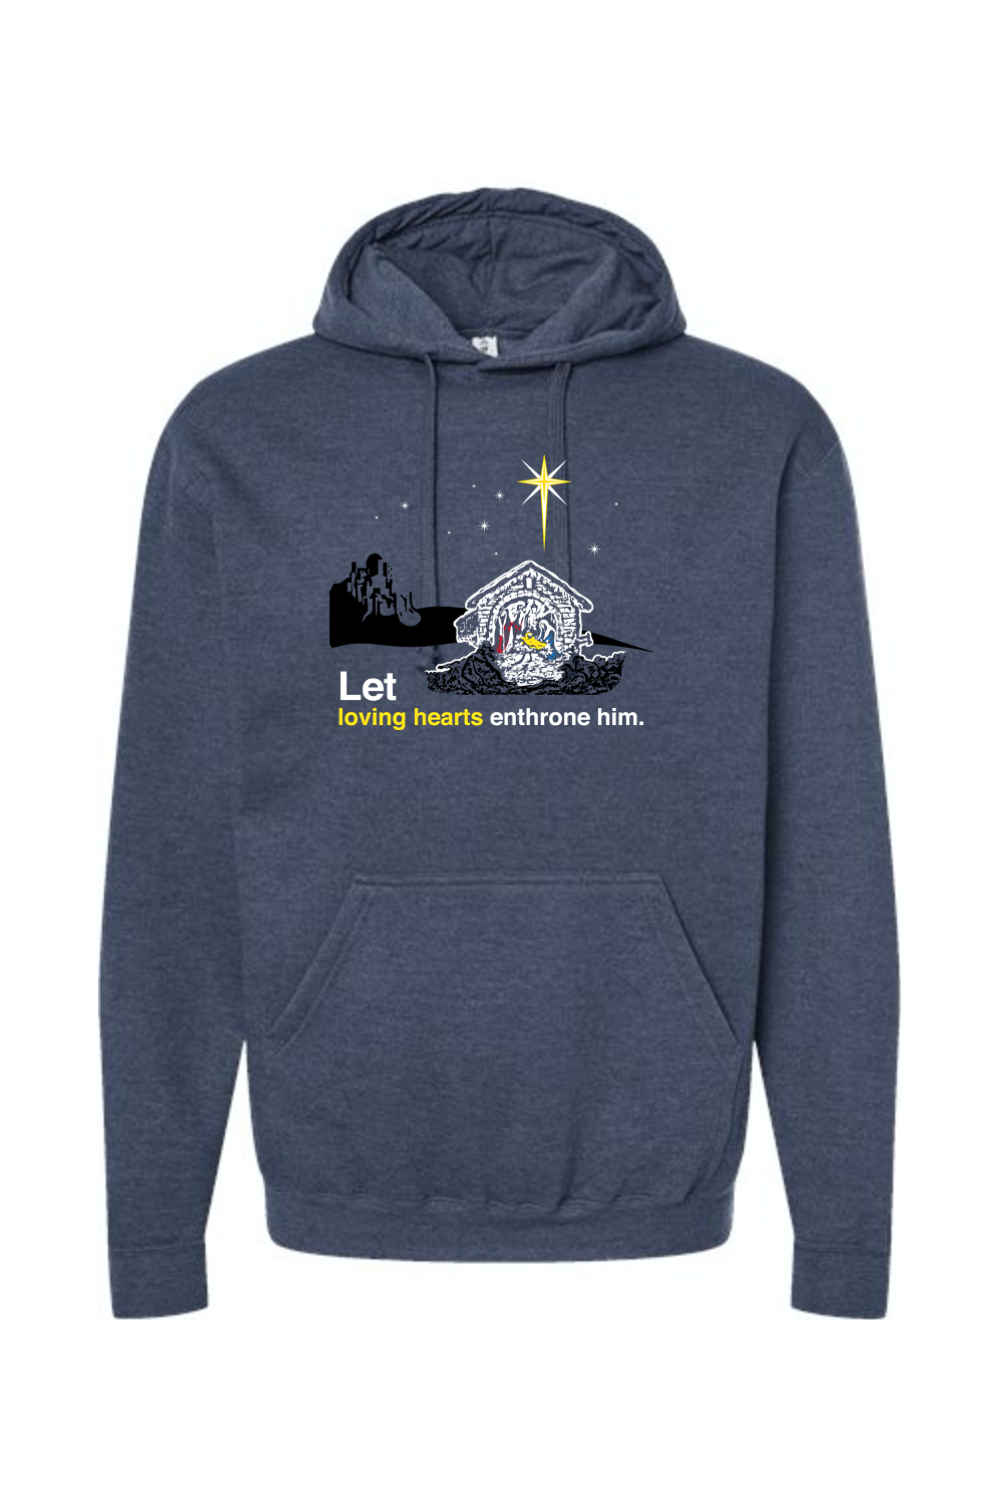 Holy Night - Christ's Nativity Hoodie Sweatshirt